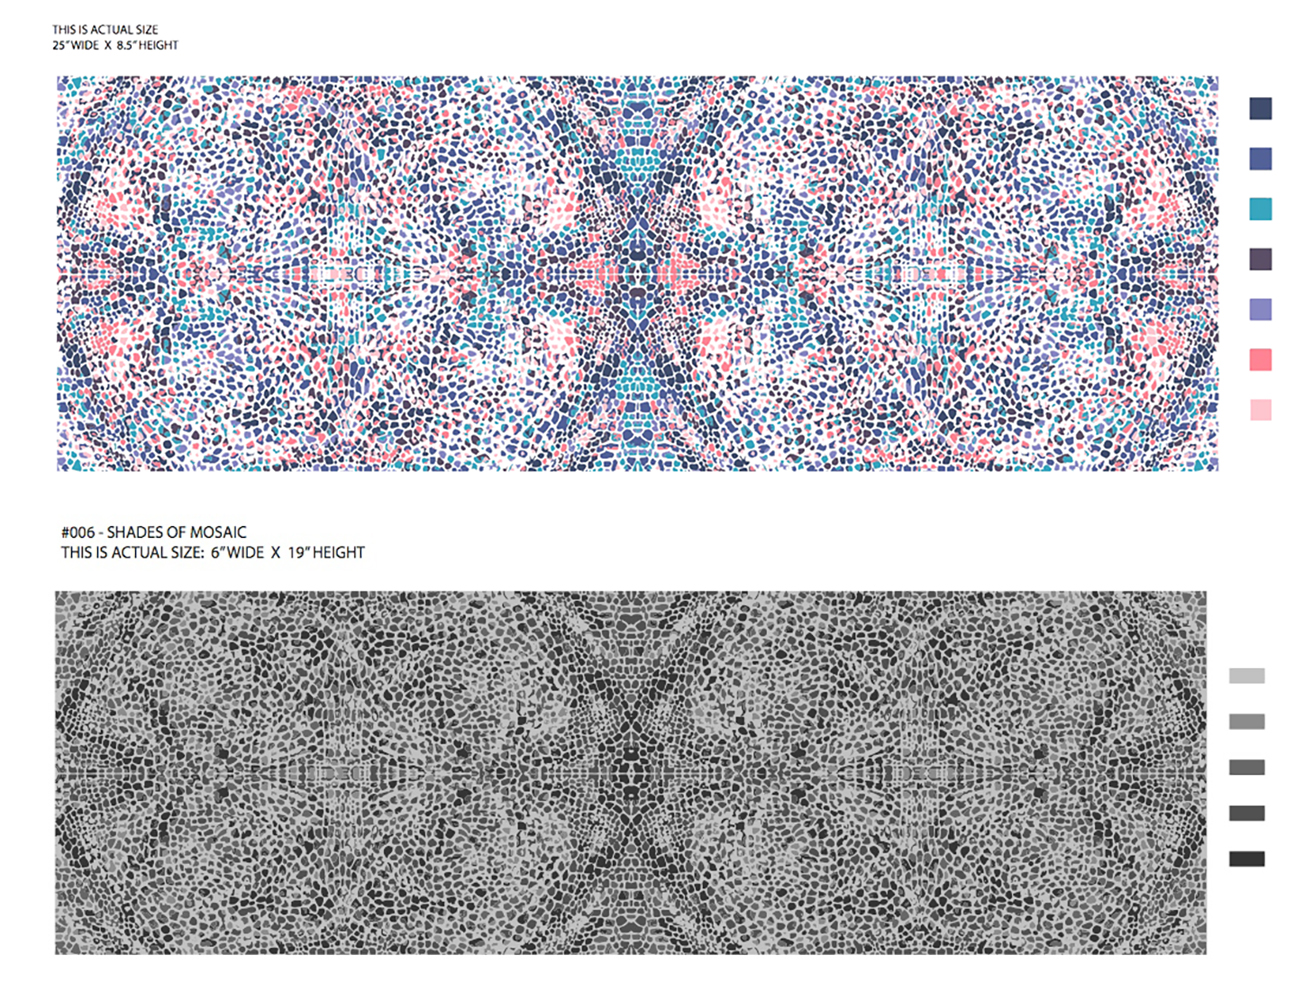 006 - shades of mosaic copy.jpg